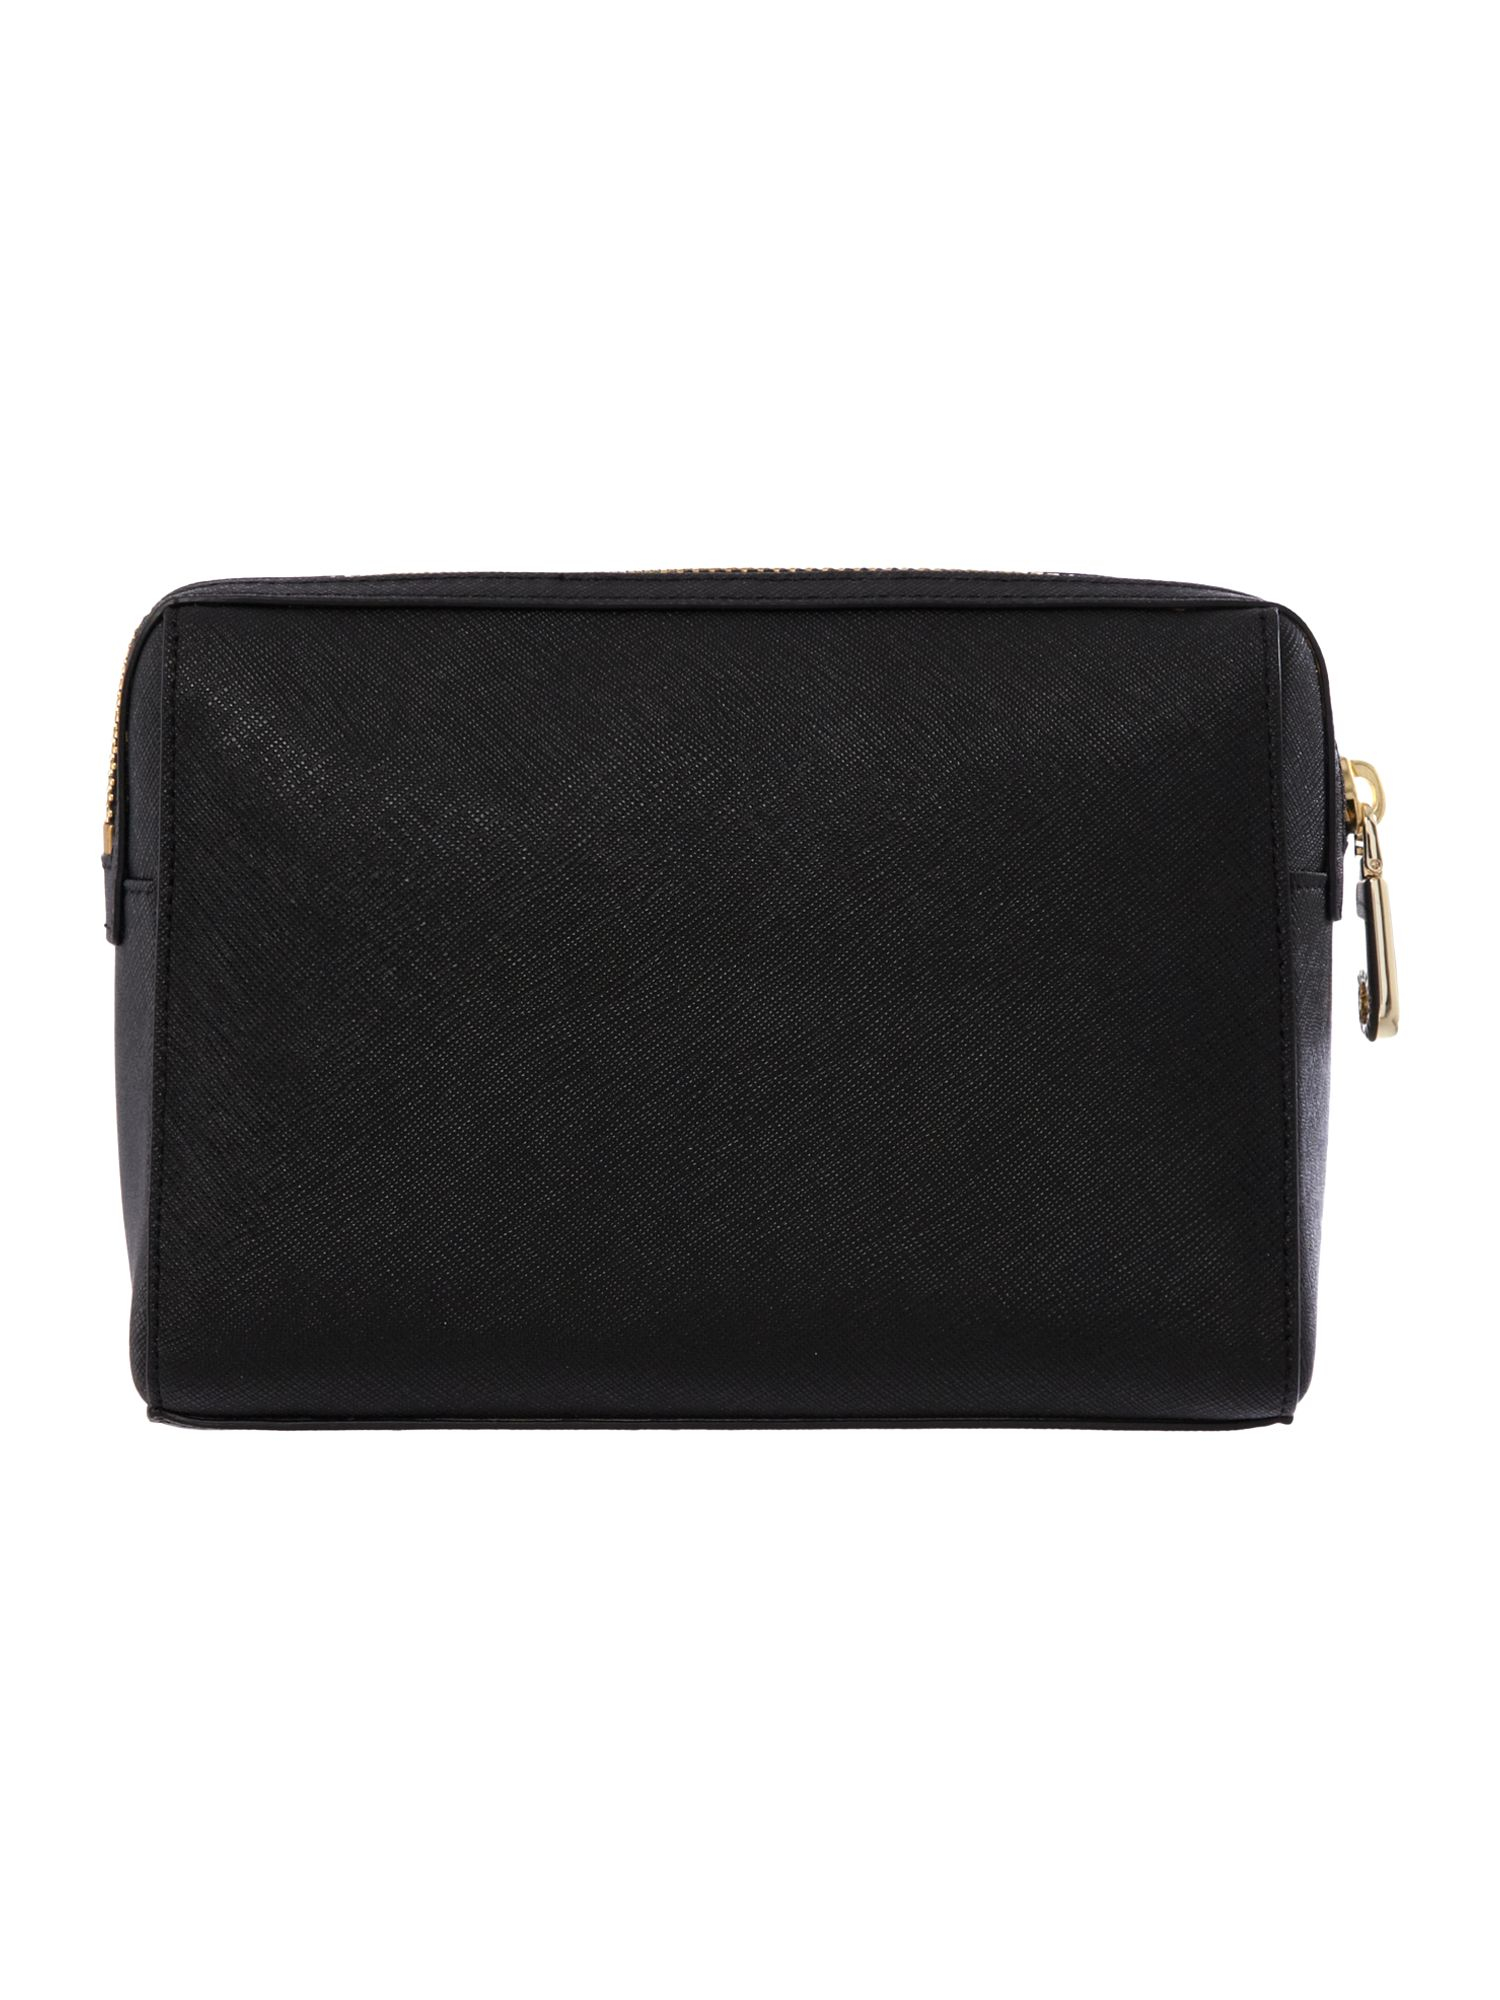 Dkny Saffiano Black Medium Cosmetic Bag in Black | Lyst